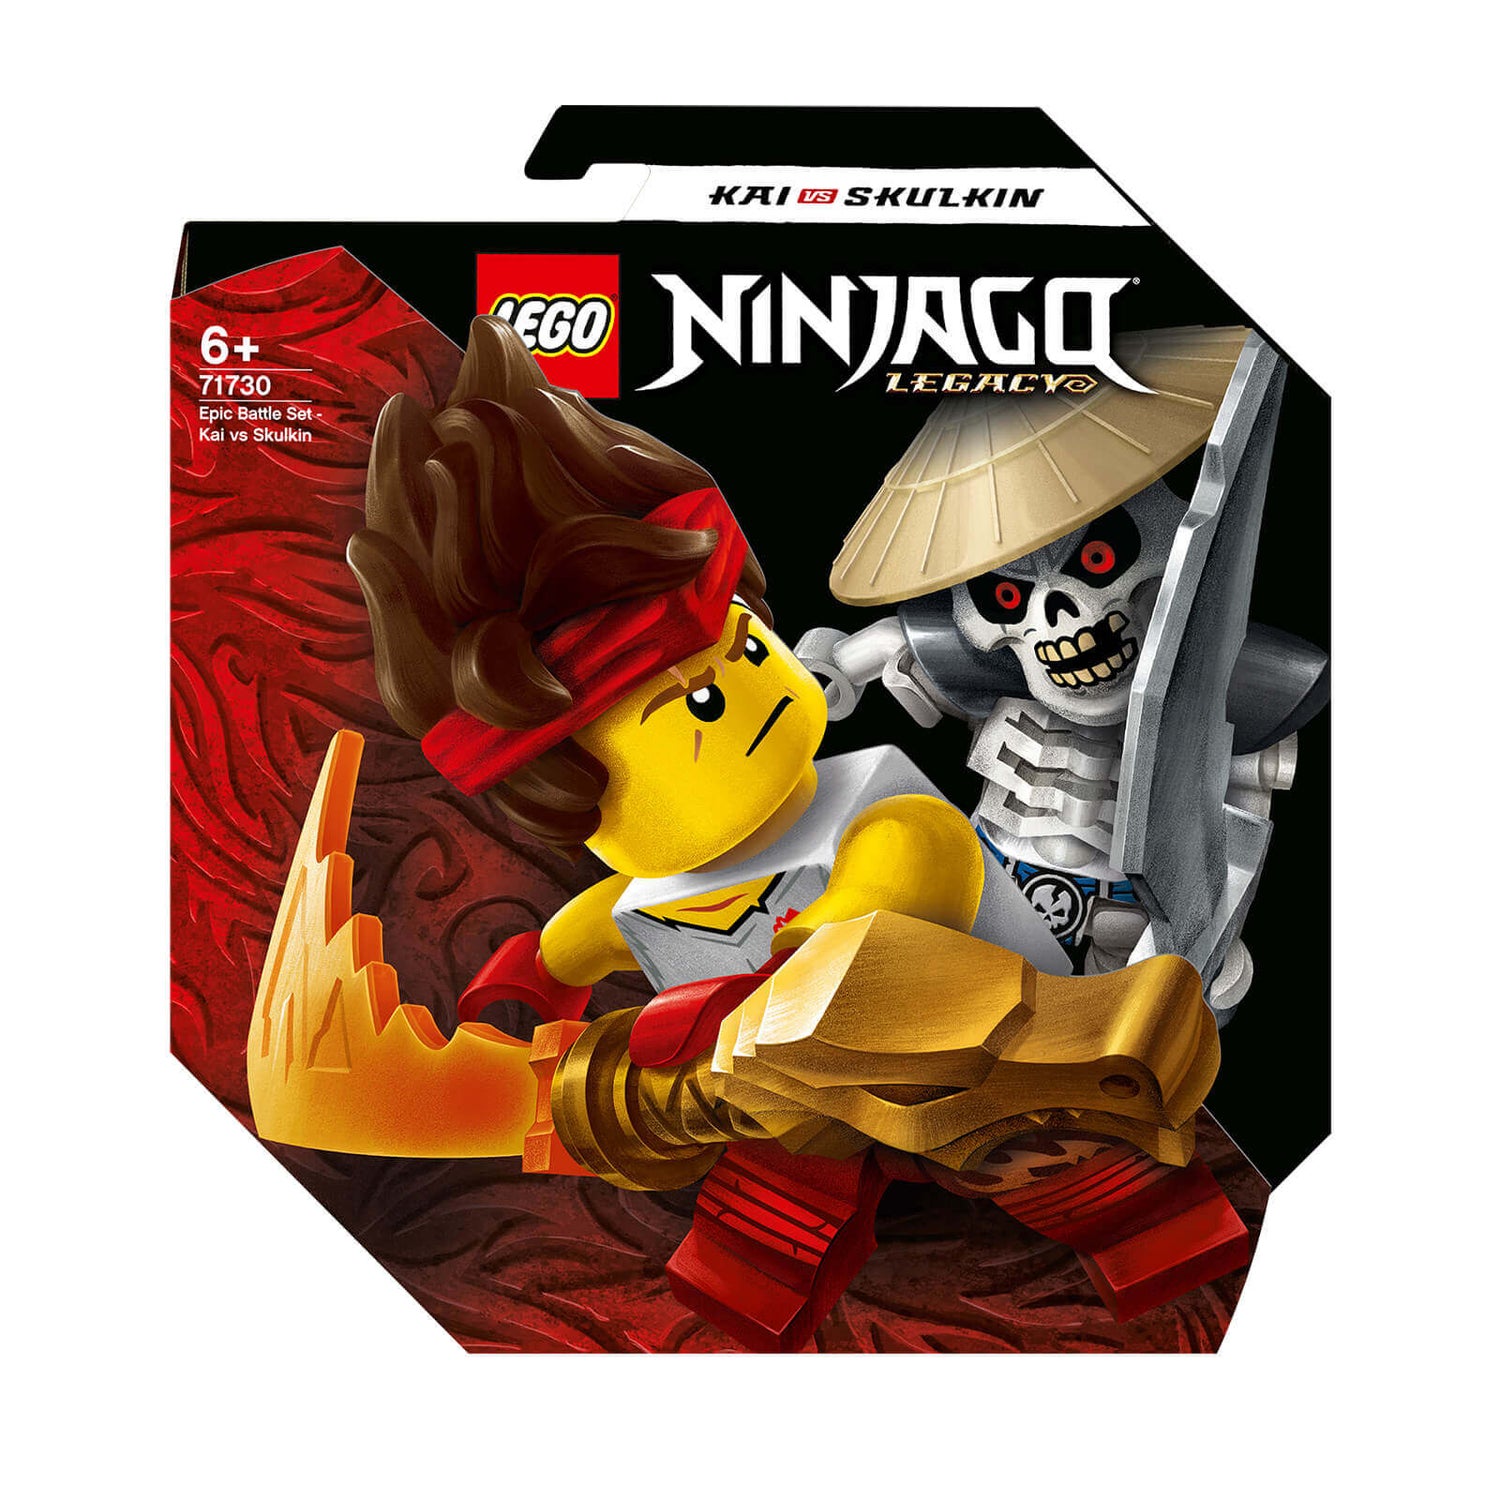 LEGO NINJAGO: Legacy Epic Battle Set – Kai vs. Skulkin (71730)